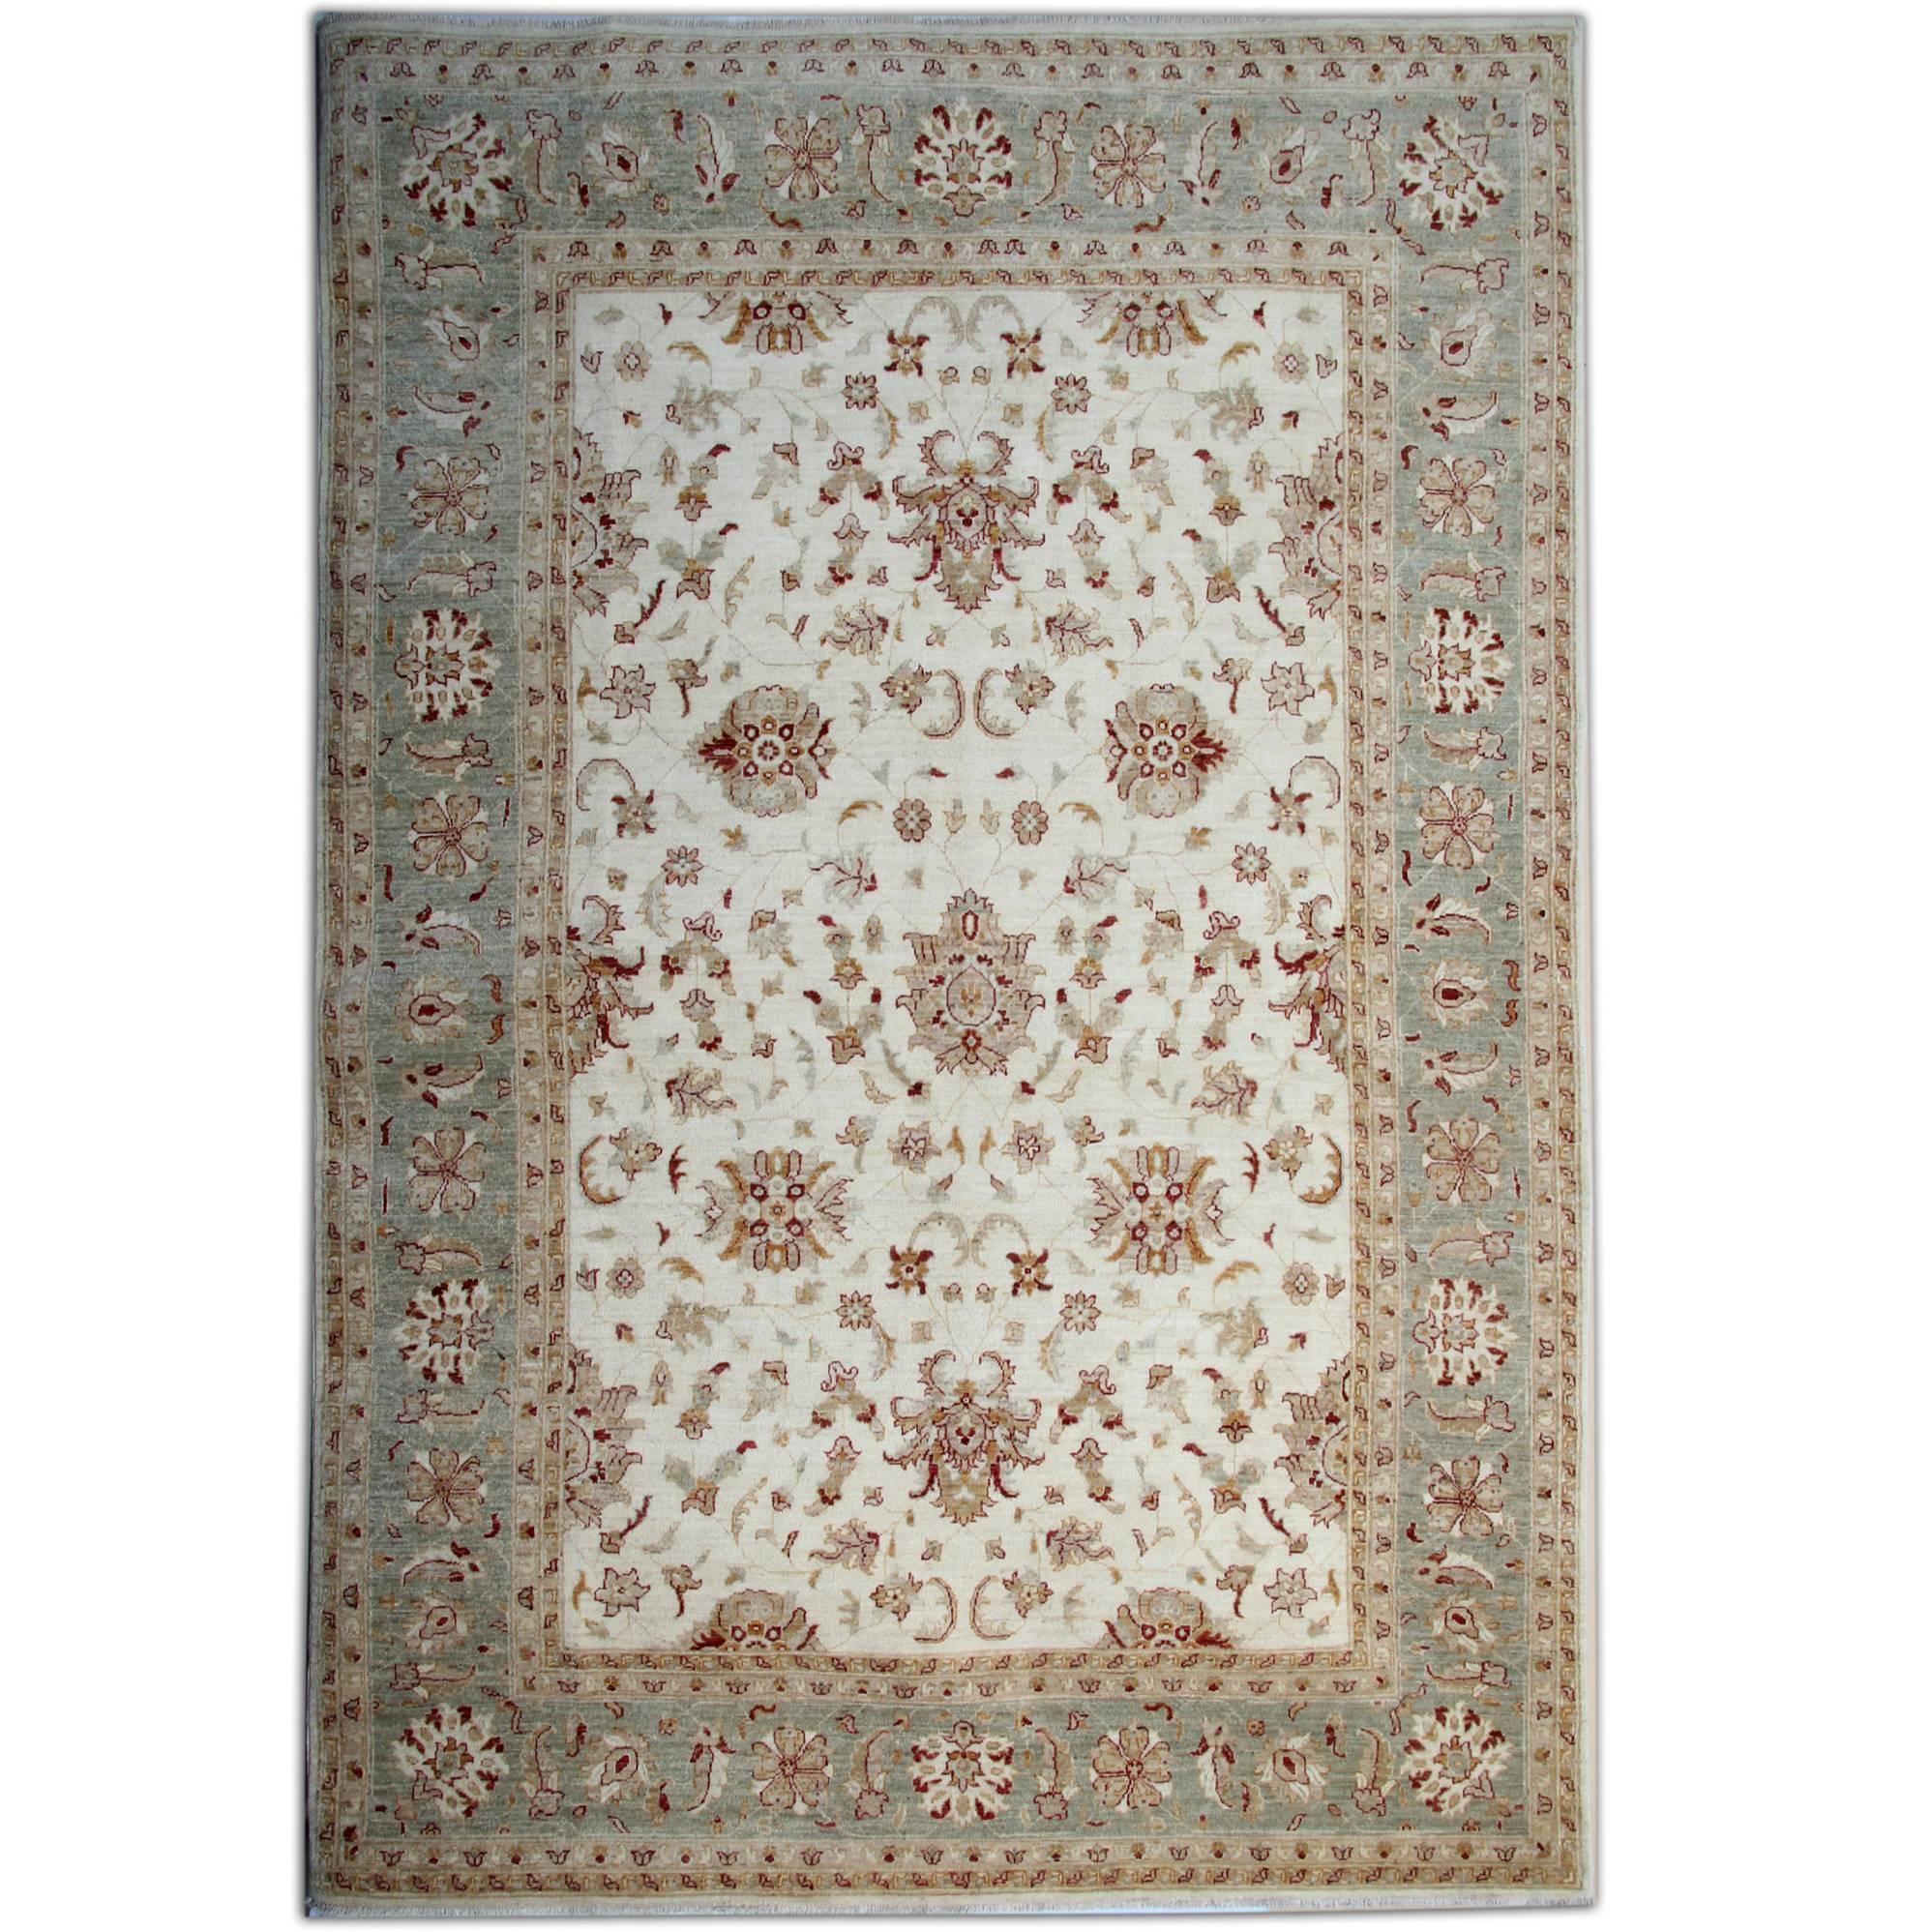 Handgefertigte Teppiche, Wohnzimmerteppiche, handgefertigter Teppich  Orientalischer Teppich in Beige